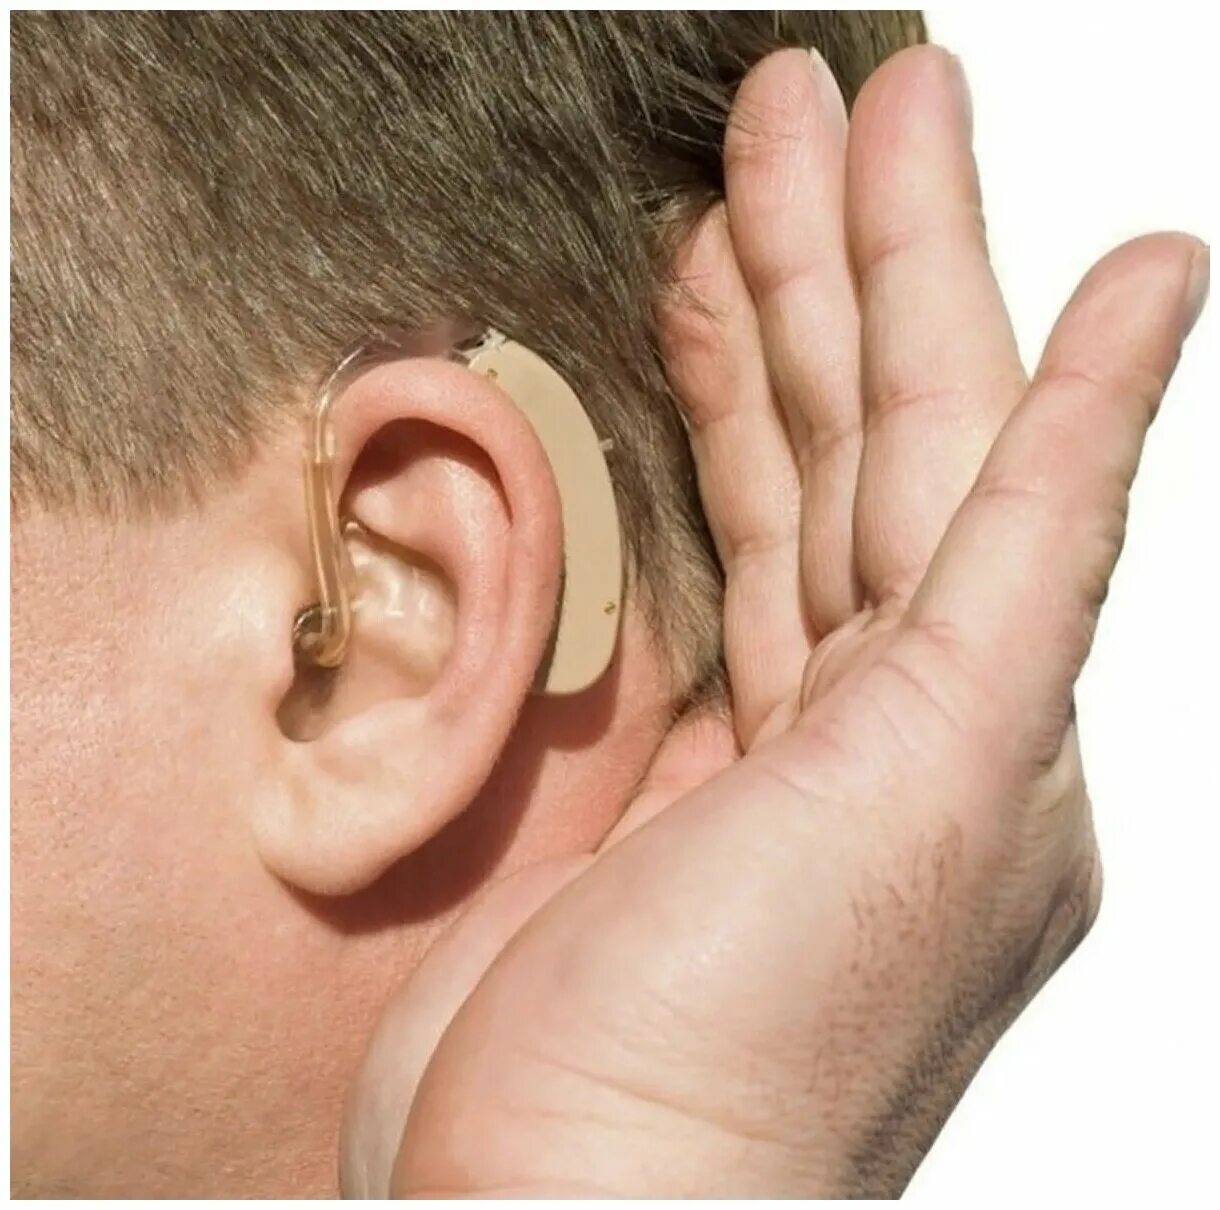 Hearing Aid слуховой аппарат. Bridzgo слуховой аппарат. Слуховой аппарат Cyber Sonic 2. Слышу звуки в голове